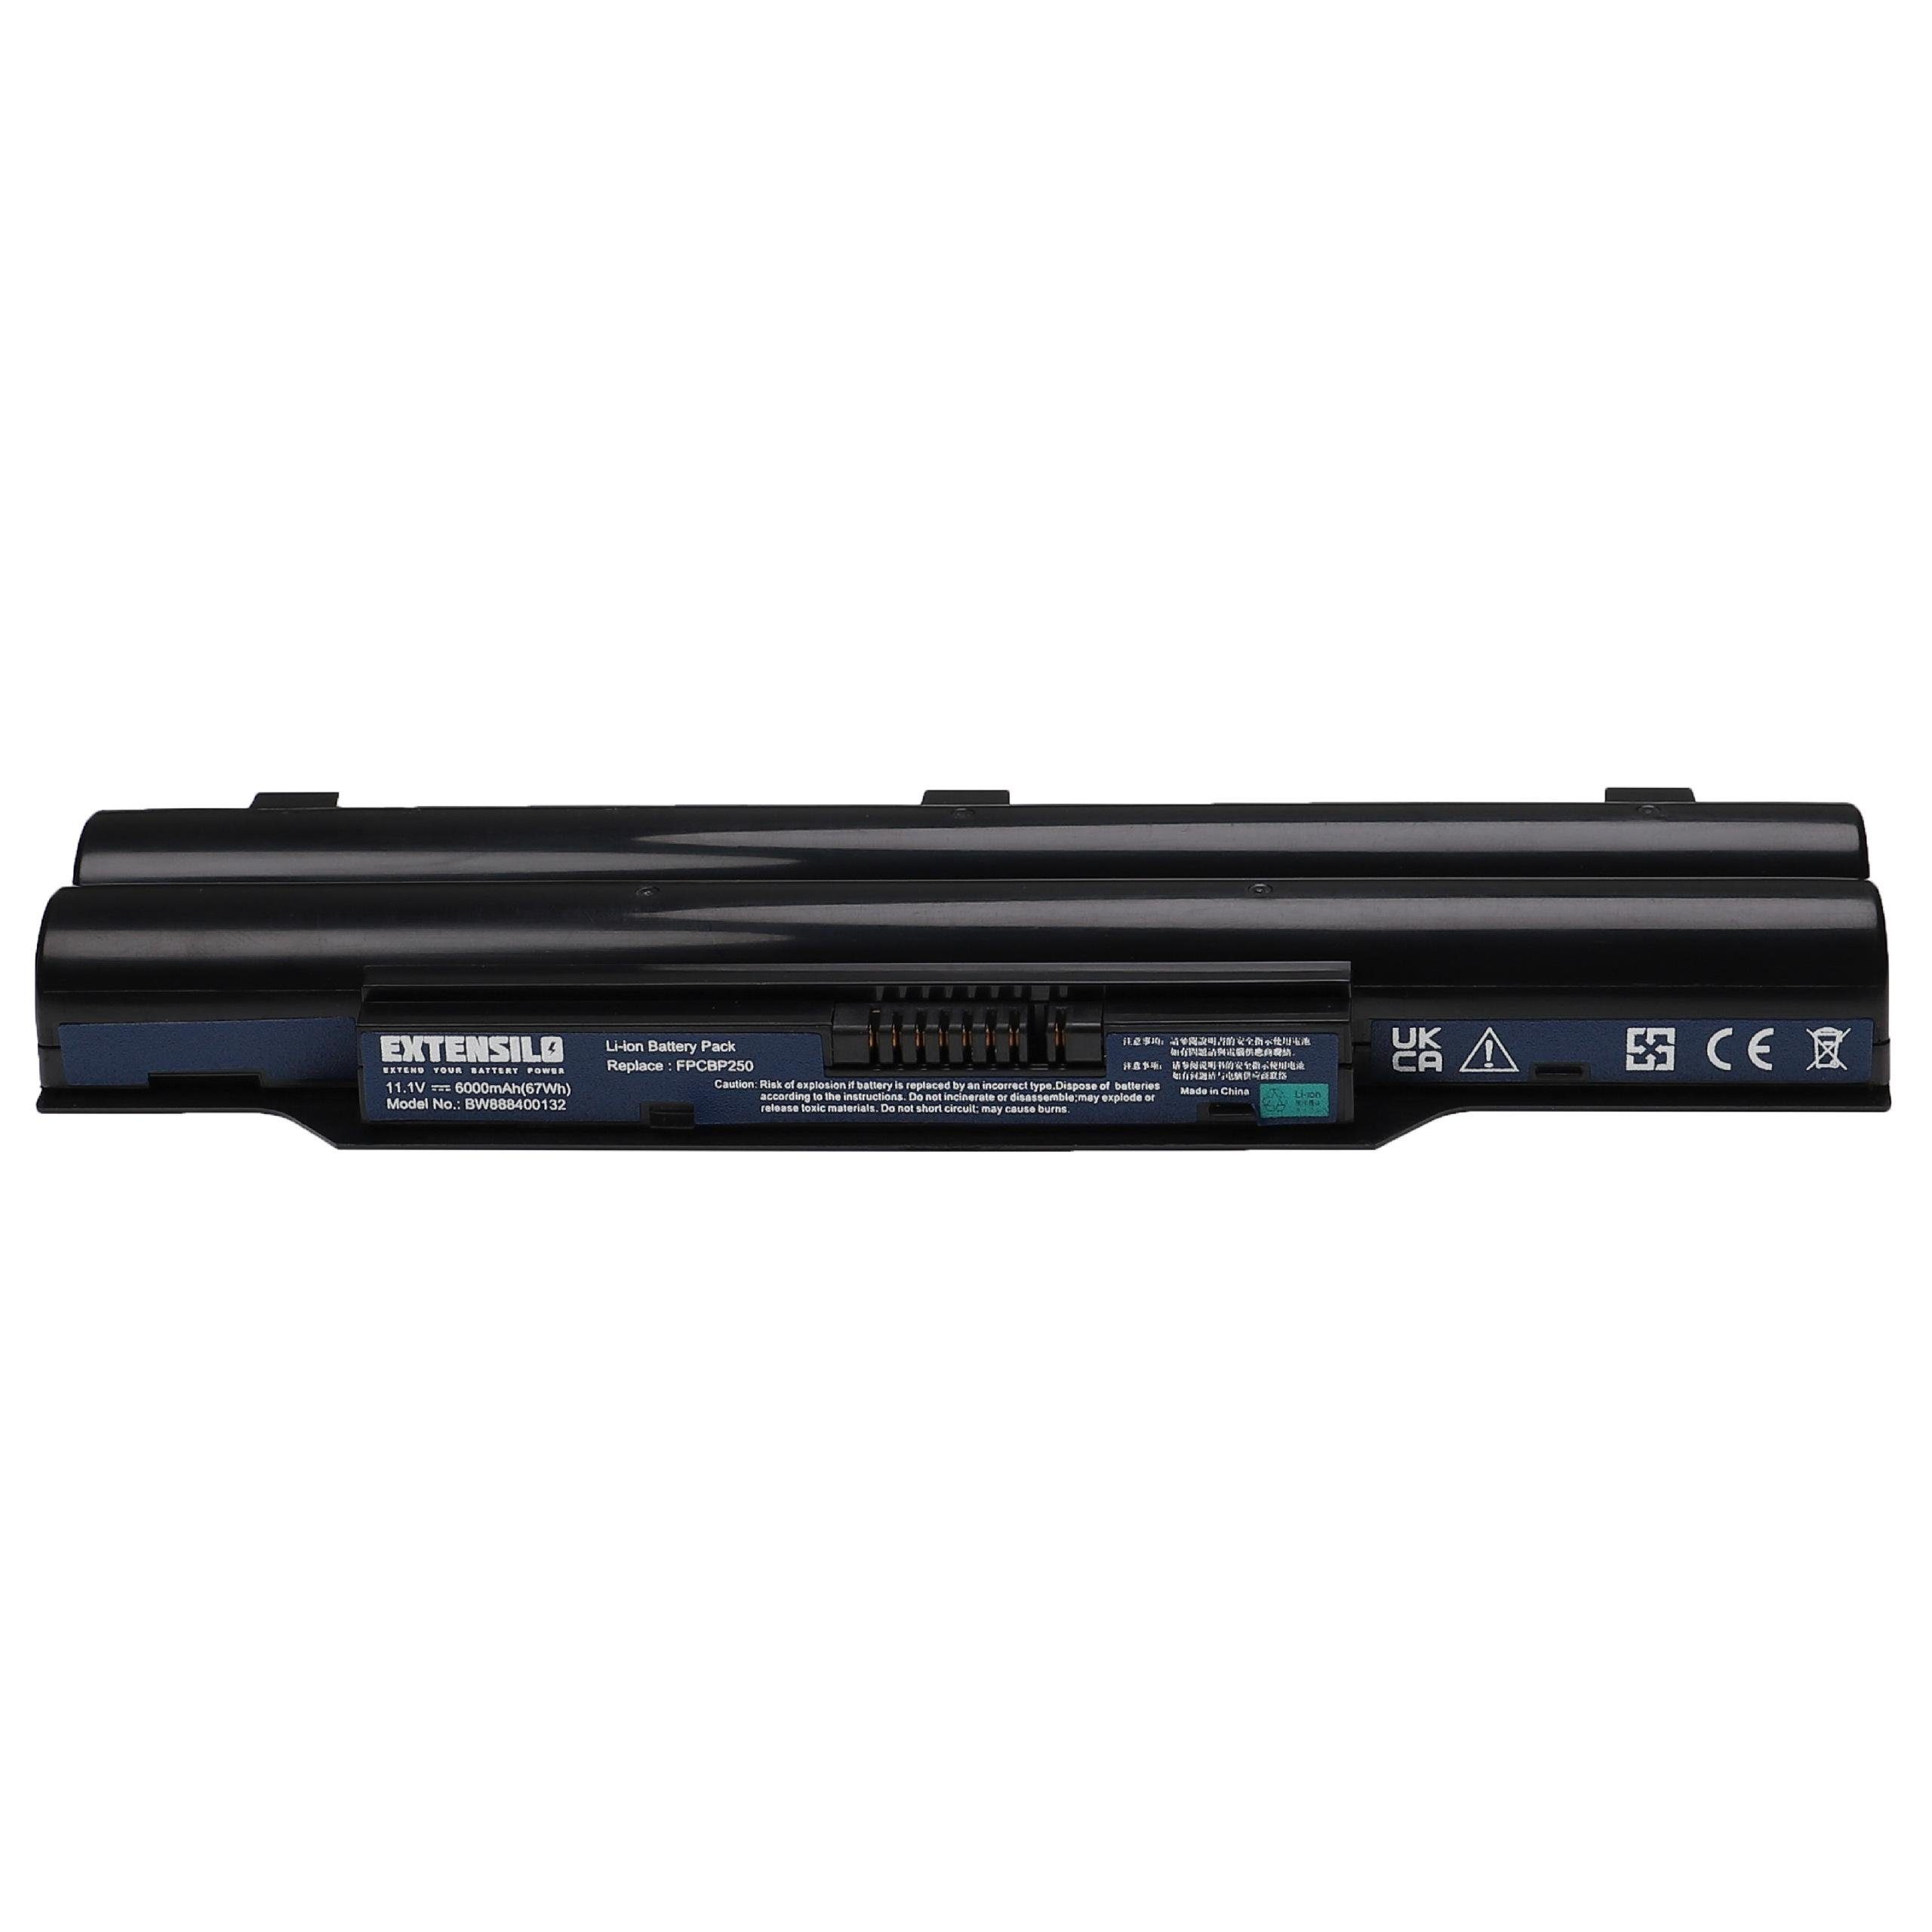 Extensilo Ersatz für Fujitsu Siemens Laptop-Akku Li-Ion mAh für S26391-F840-L100 (11,1 V) 6000